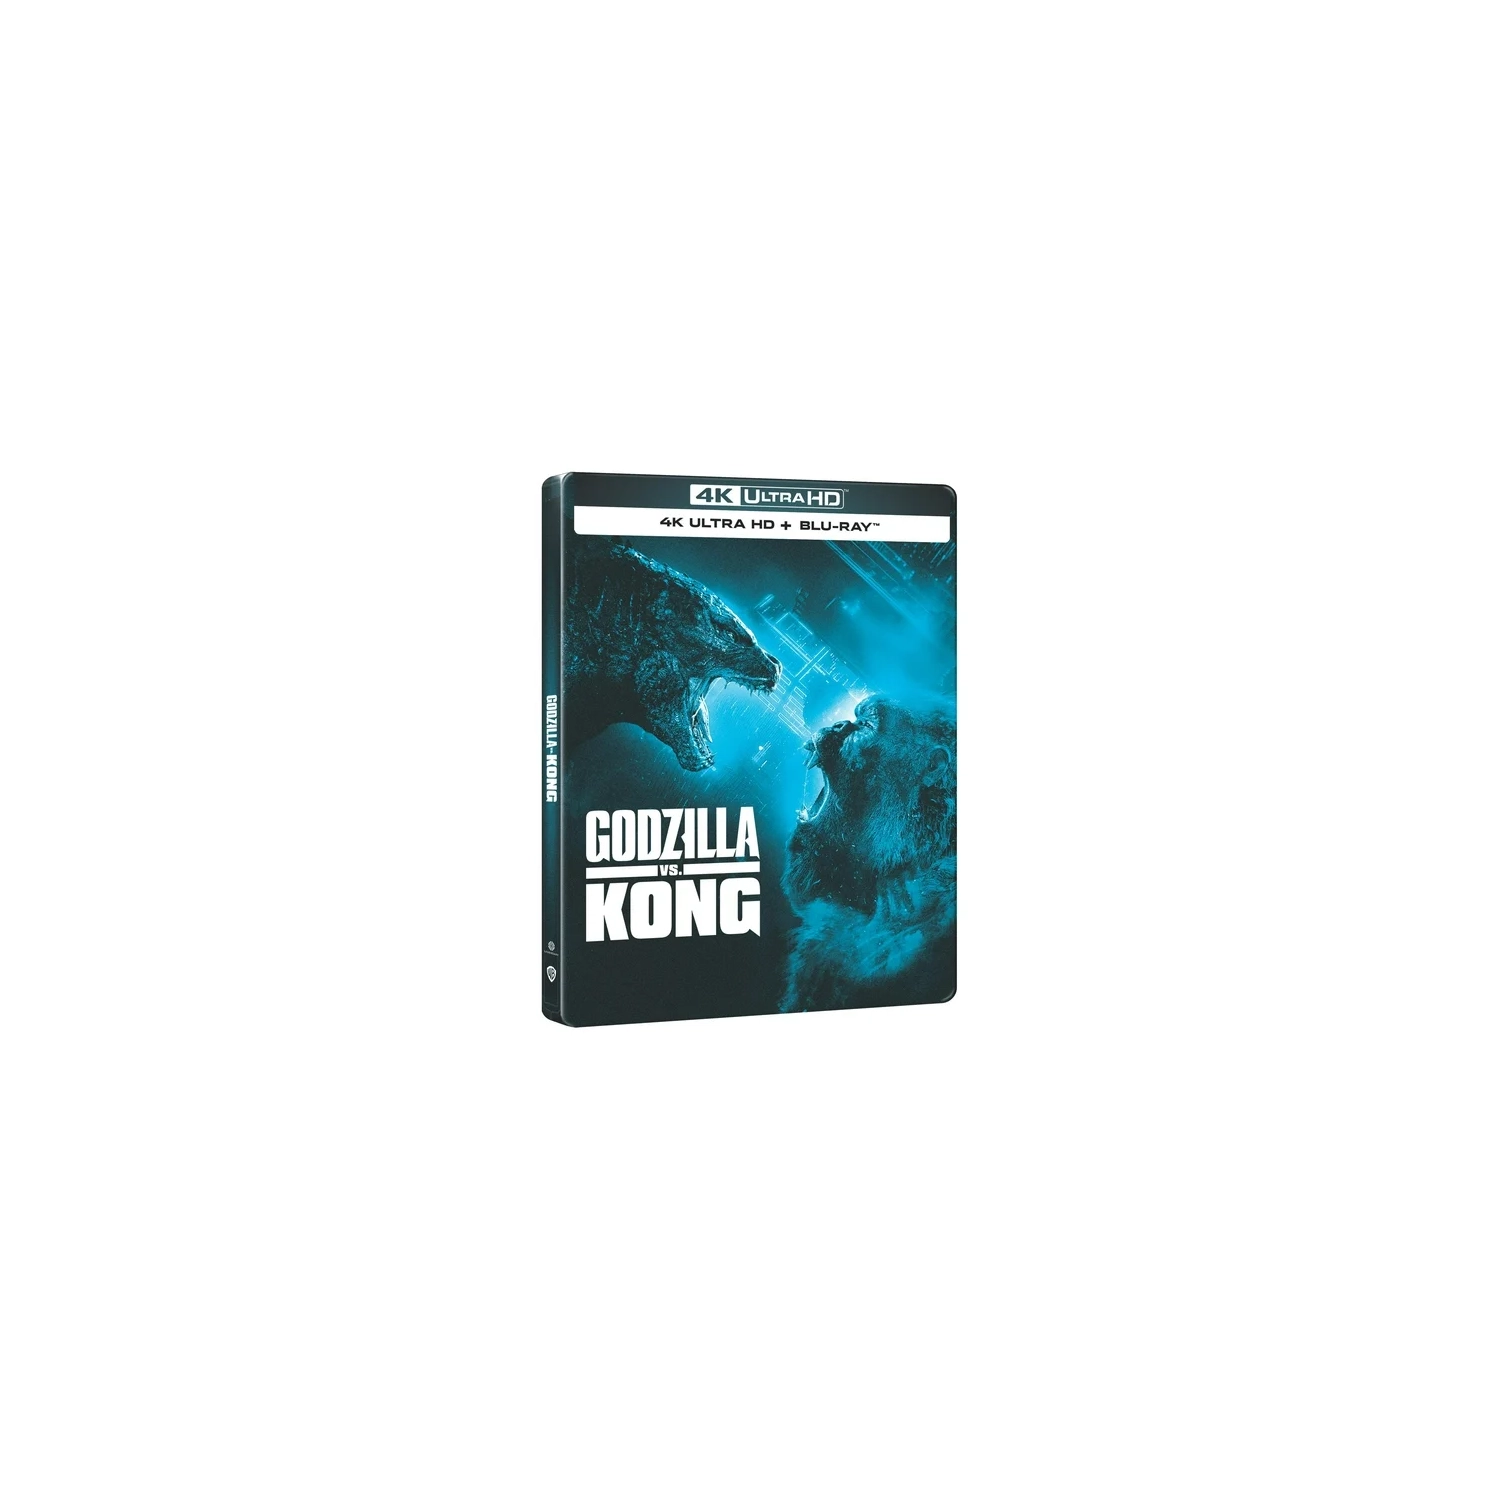 Godzilla vs. Kong [Steelbook] [4K Ultra HD + Blu-ray + Digital Copy]